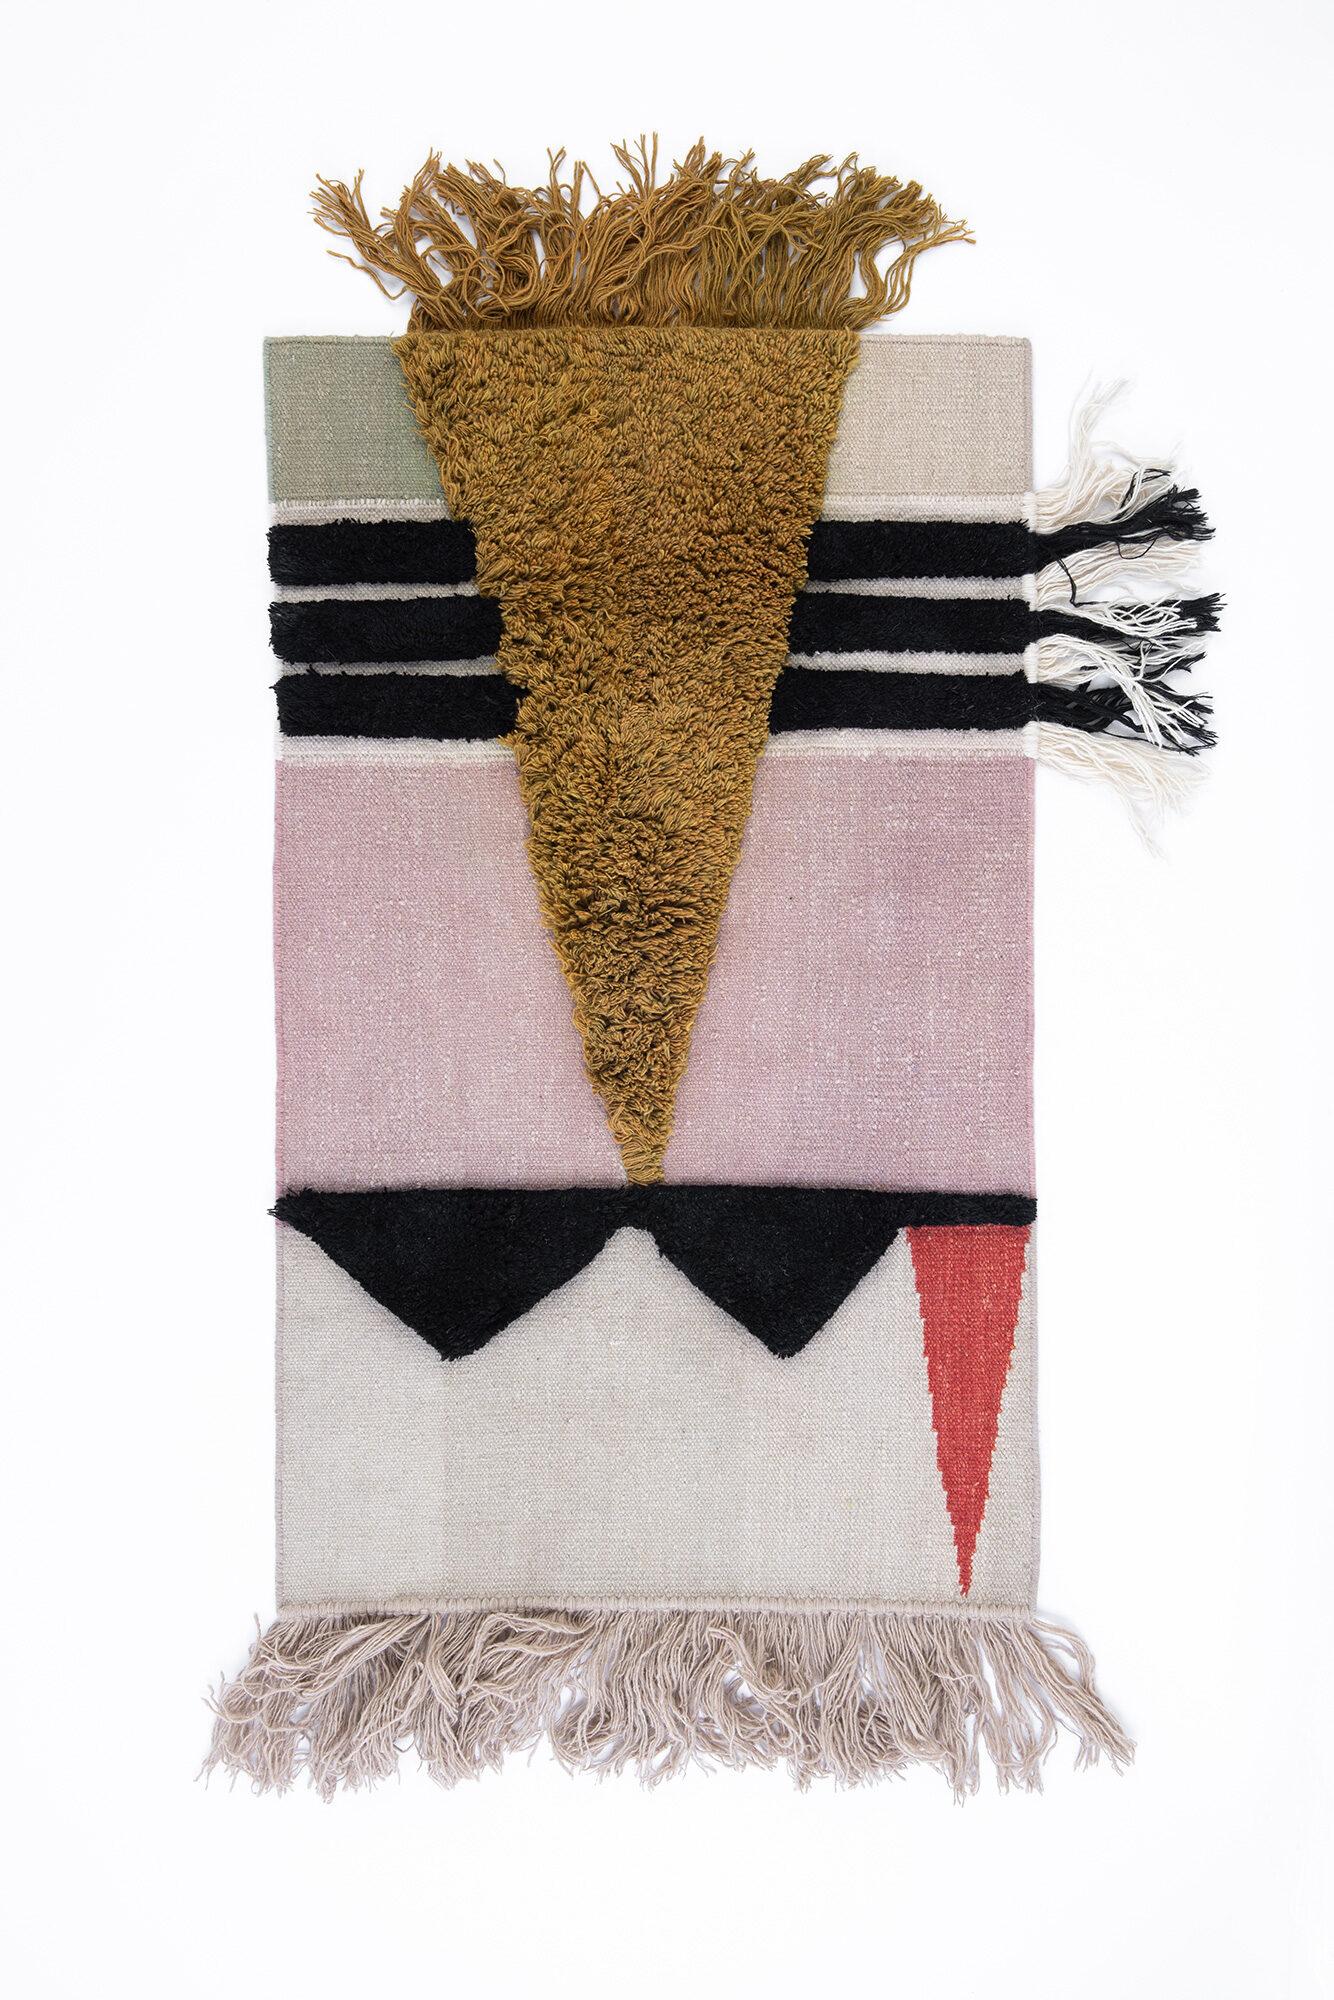 Textile noué à la main Poster #12 par Lyk carpet
Exemplaire unique.
Dimensions : L 85 x L 140 cm.
Matériaux : 100% laine des hauts plateaux tibétains filée à la main à partir de moutons vivants, teintée traditionnellement à la plante, teintée au